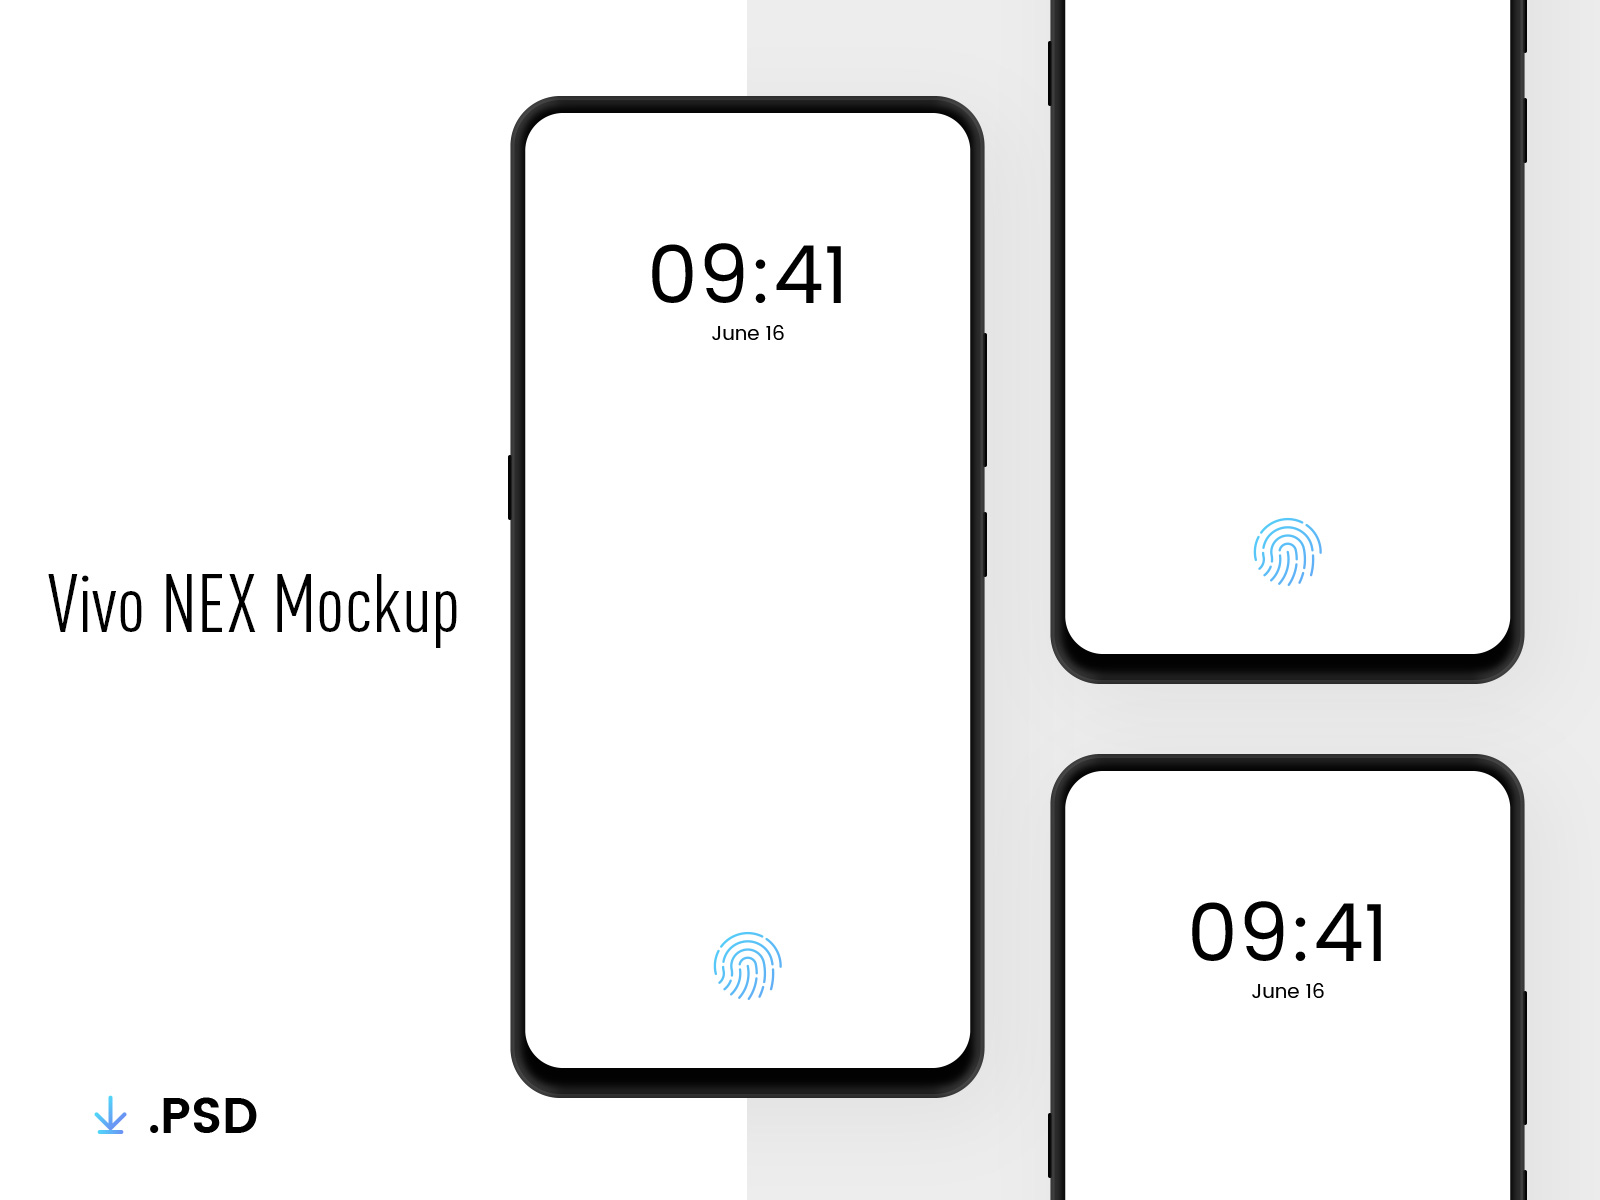 安卓手机样机贴图模版 Vivo NEX Mockup